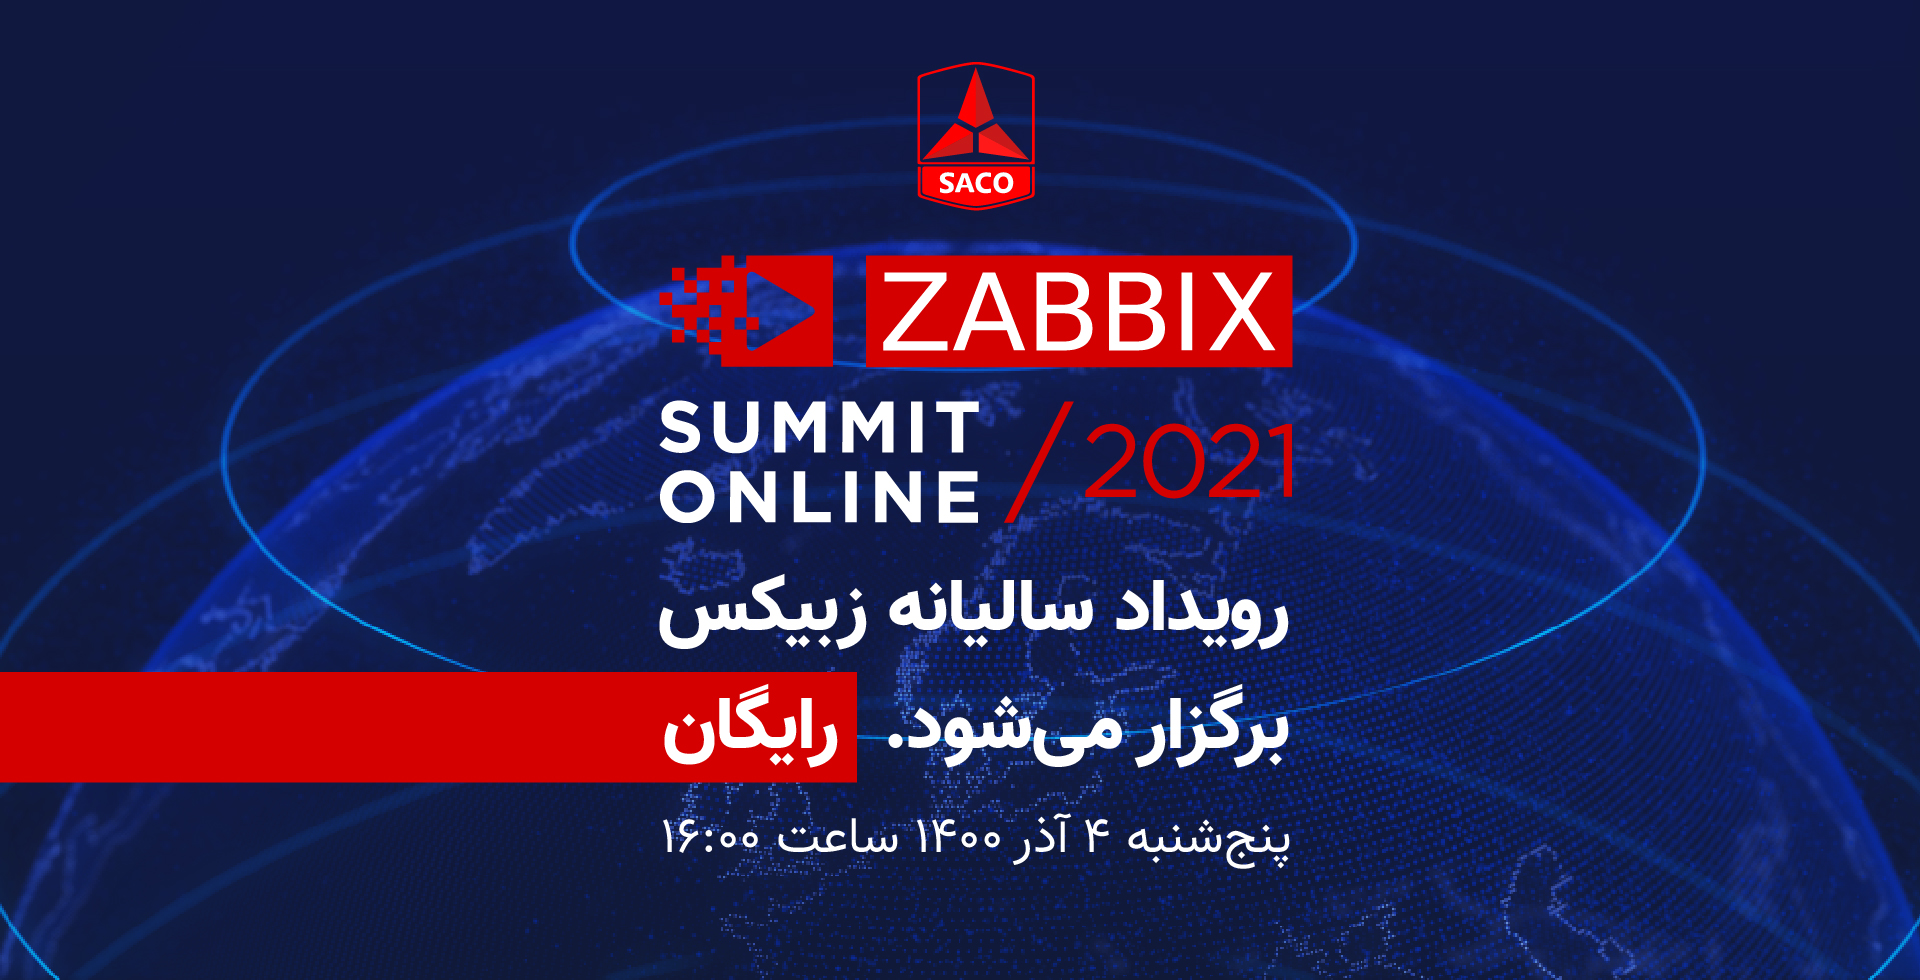 برگزاری رویداد سالیانه زبیکس (ZABBIX Summit 2021)